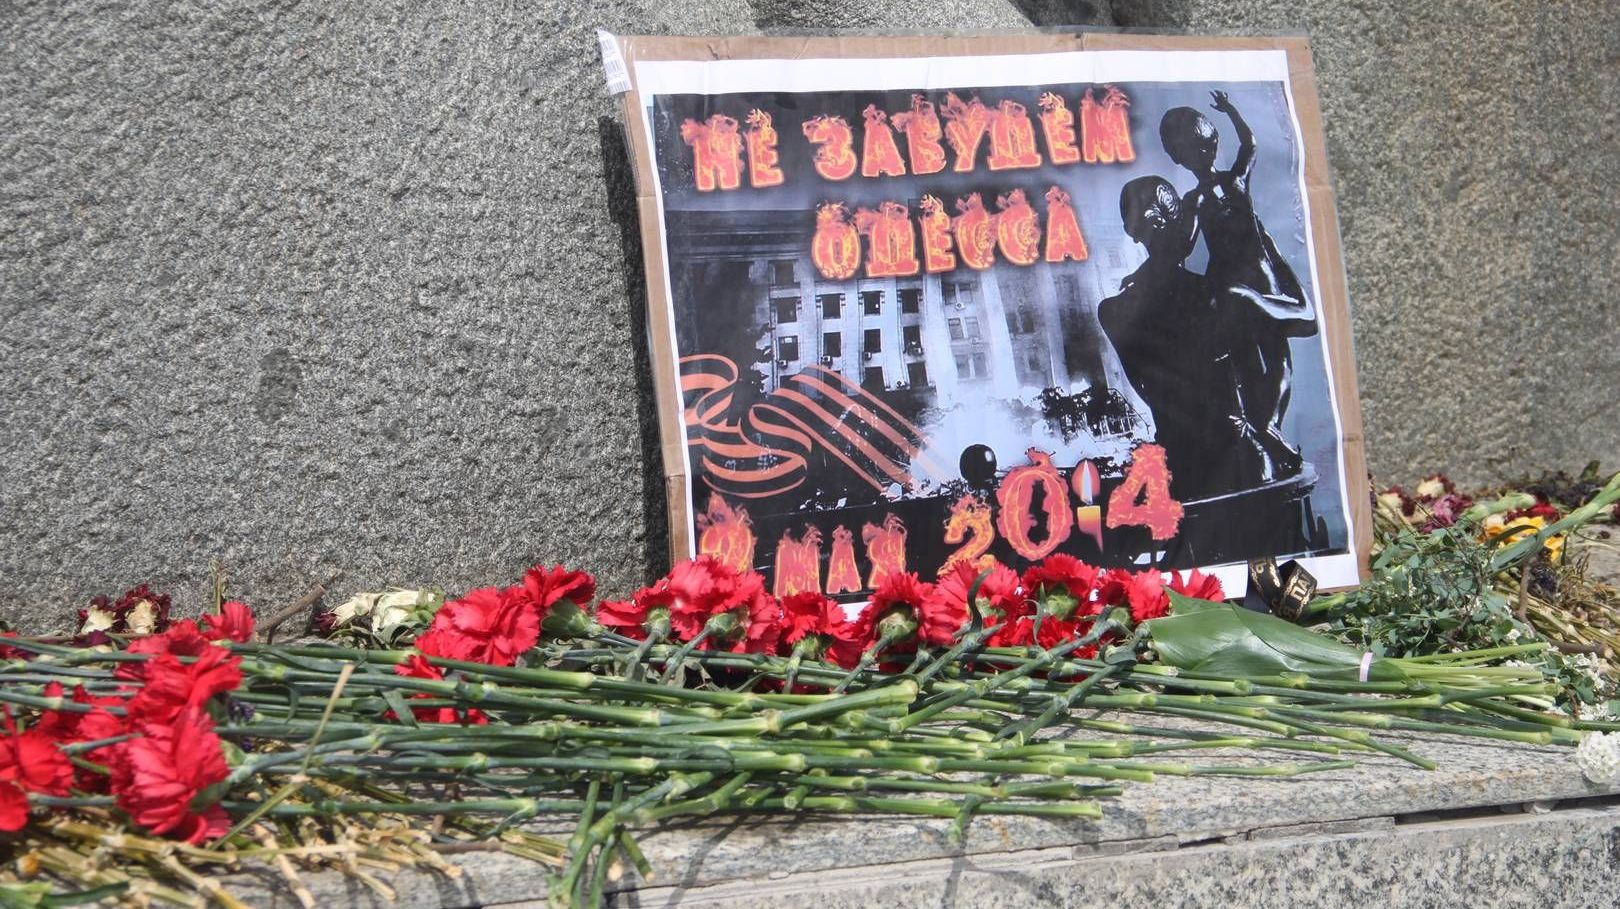 Цветы, возложенные к памятнику жертвам фашистов. Краснодар. 2 мая 2019 г.